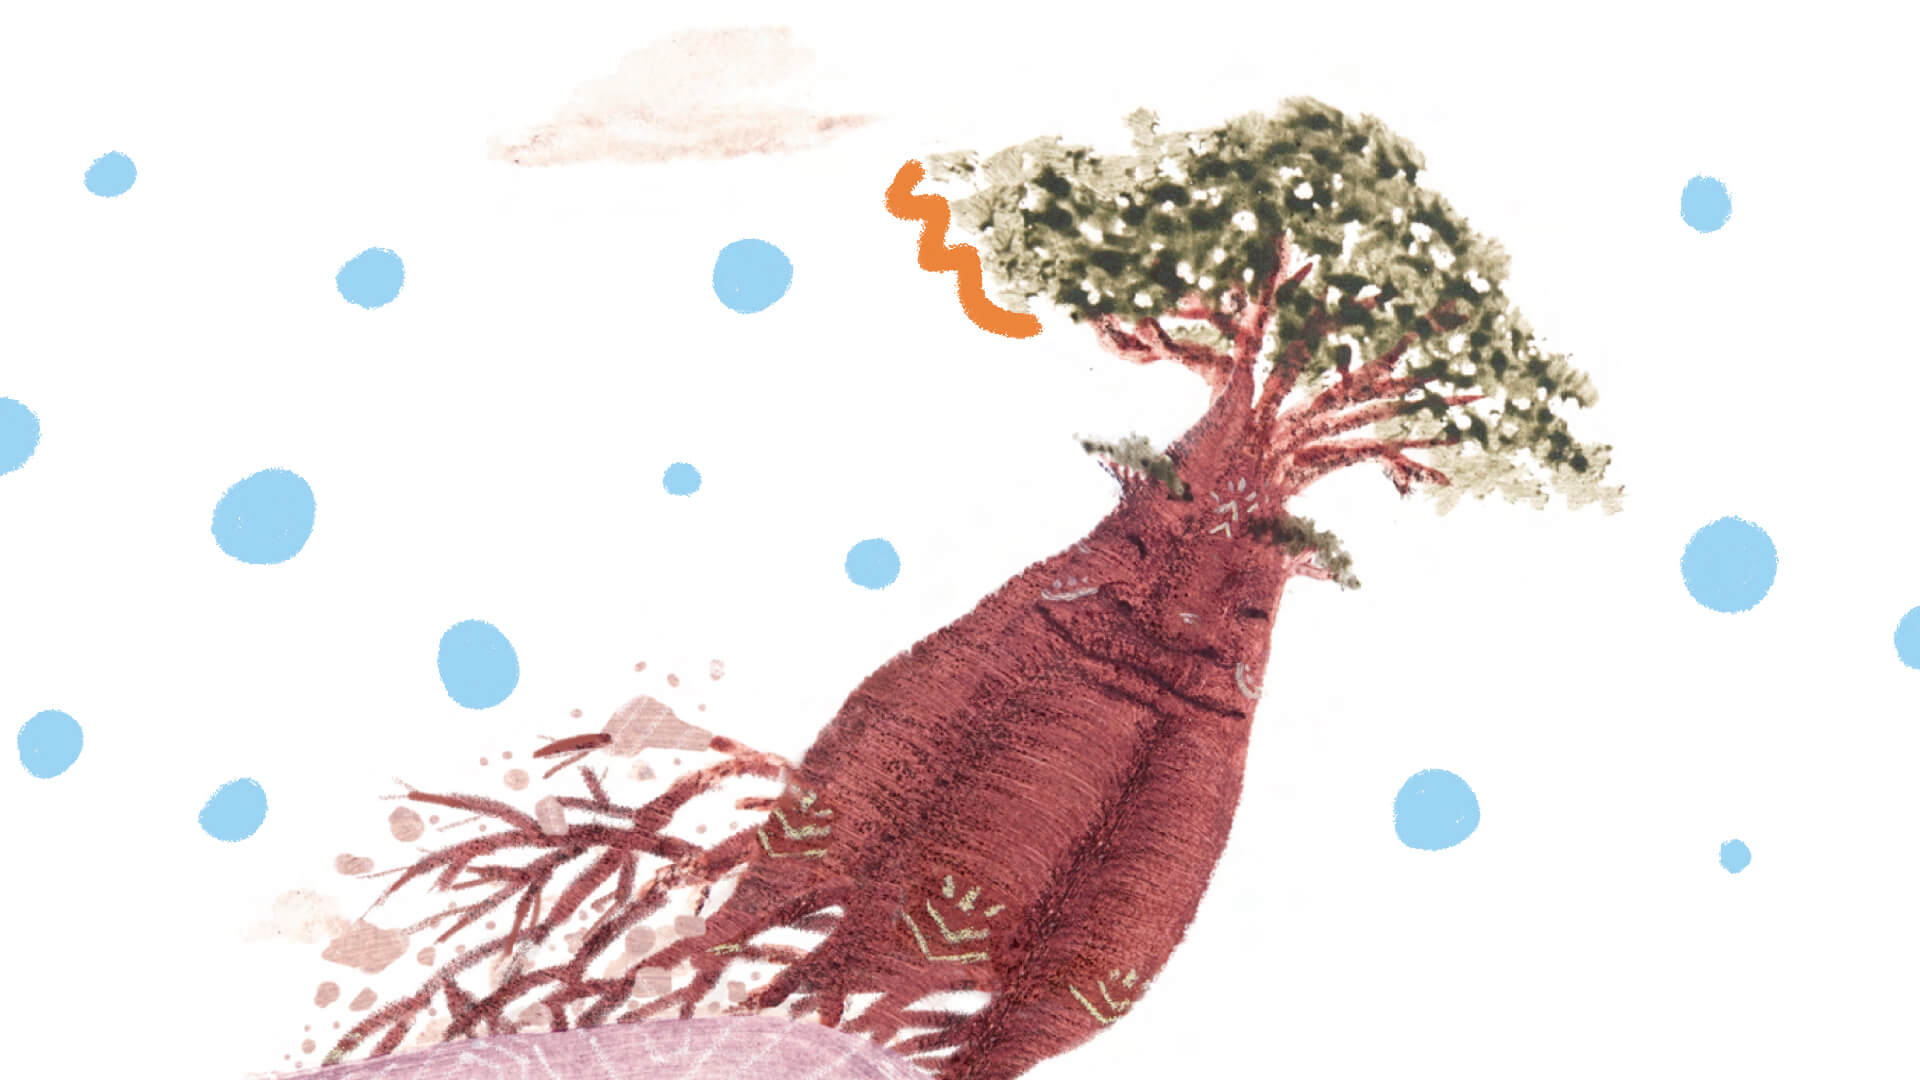 Imagem do livro Uma aventura do Velho Baobá” que mostra as raízes da árvore como se estivesse em movimento. Em torno dela, há intervenções de arte com bolinhas azuis e rabiscos laranjas.